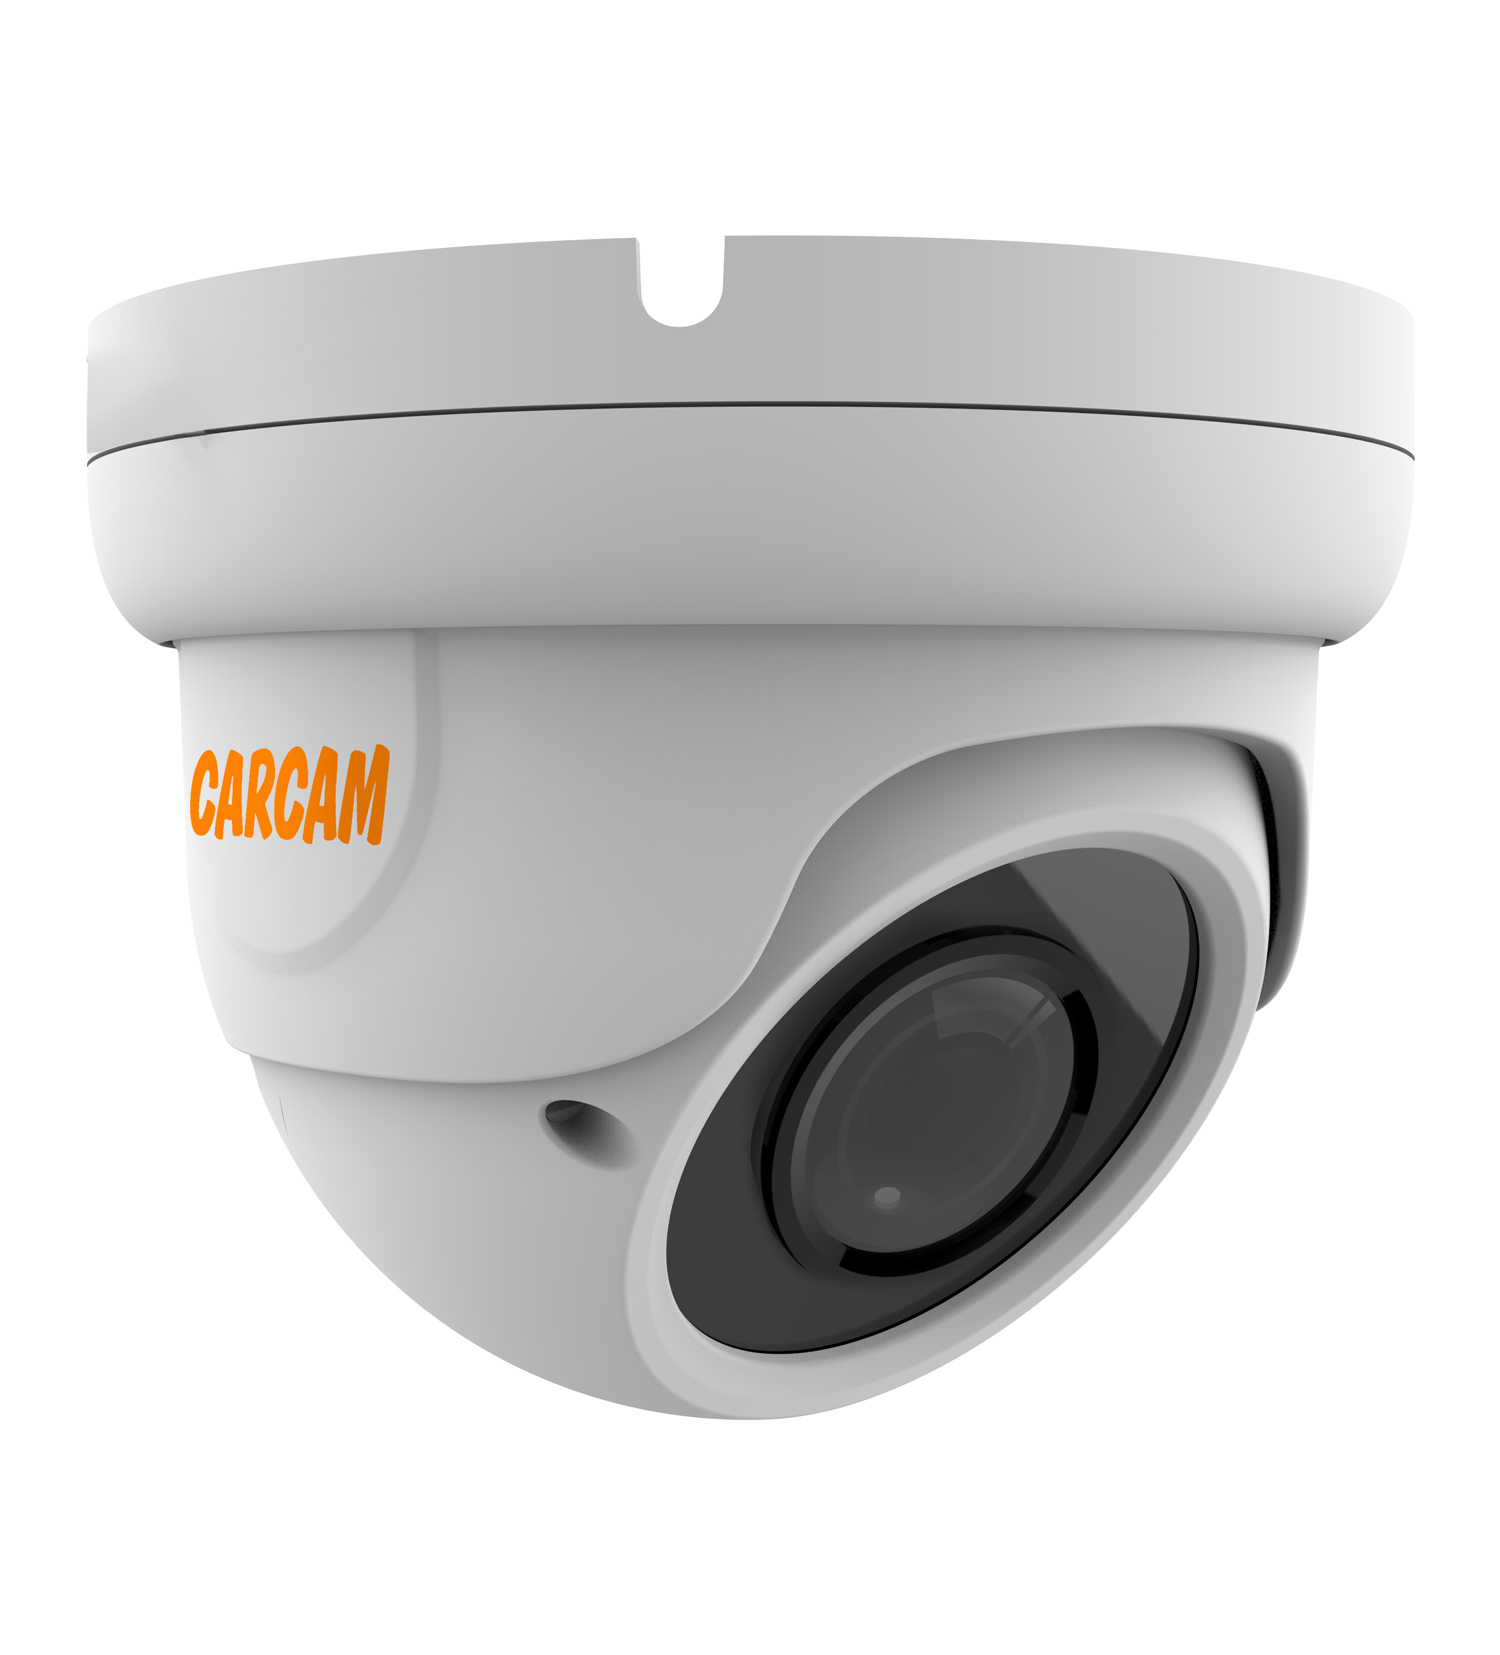 Купольная AHD-камера CARCAM 5MP Dome HD Camera 5041 (2.8-12mm) купольная full hd ip камера с poe микрофоном и ик подсветкой 25 м carcam 2mp dome ip camera 2071m